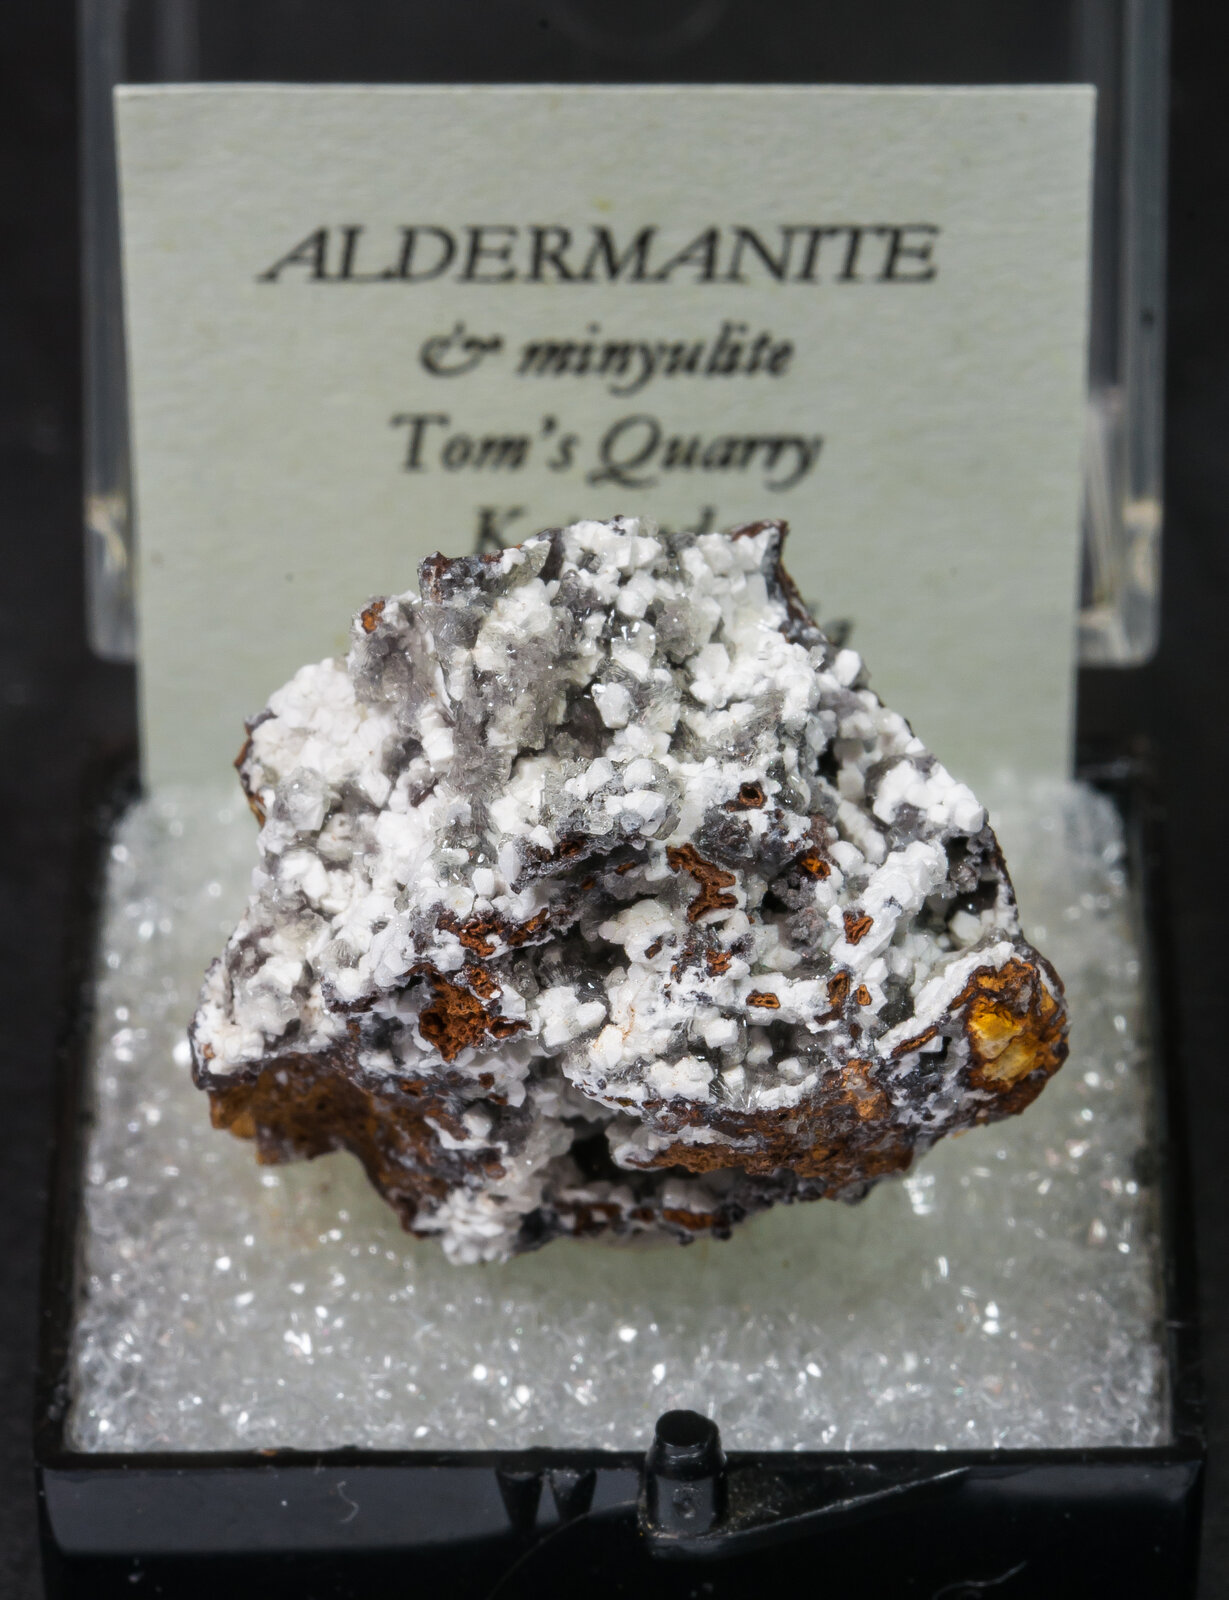 specimens/s_imagesAM9/Aldermanite-ME46AM9f1.jpg